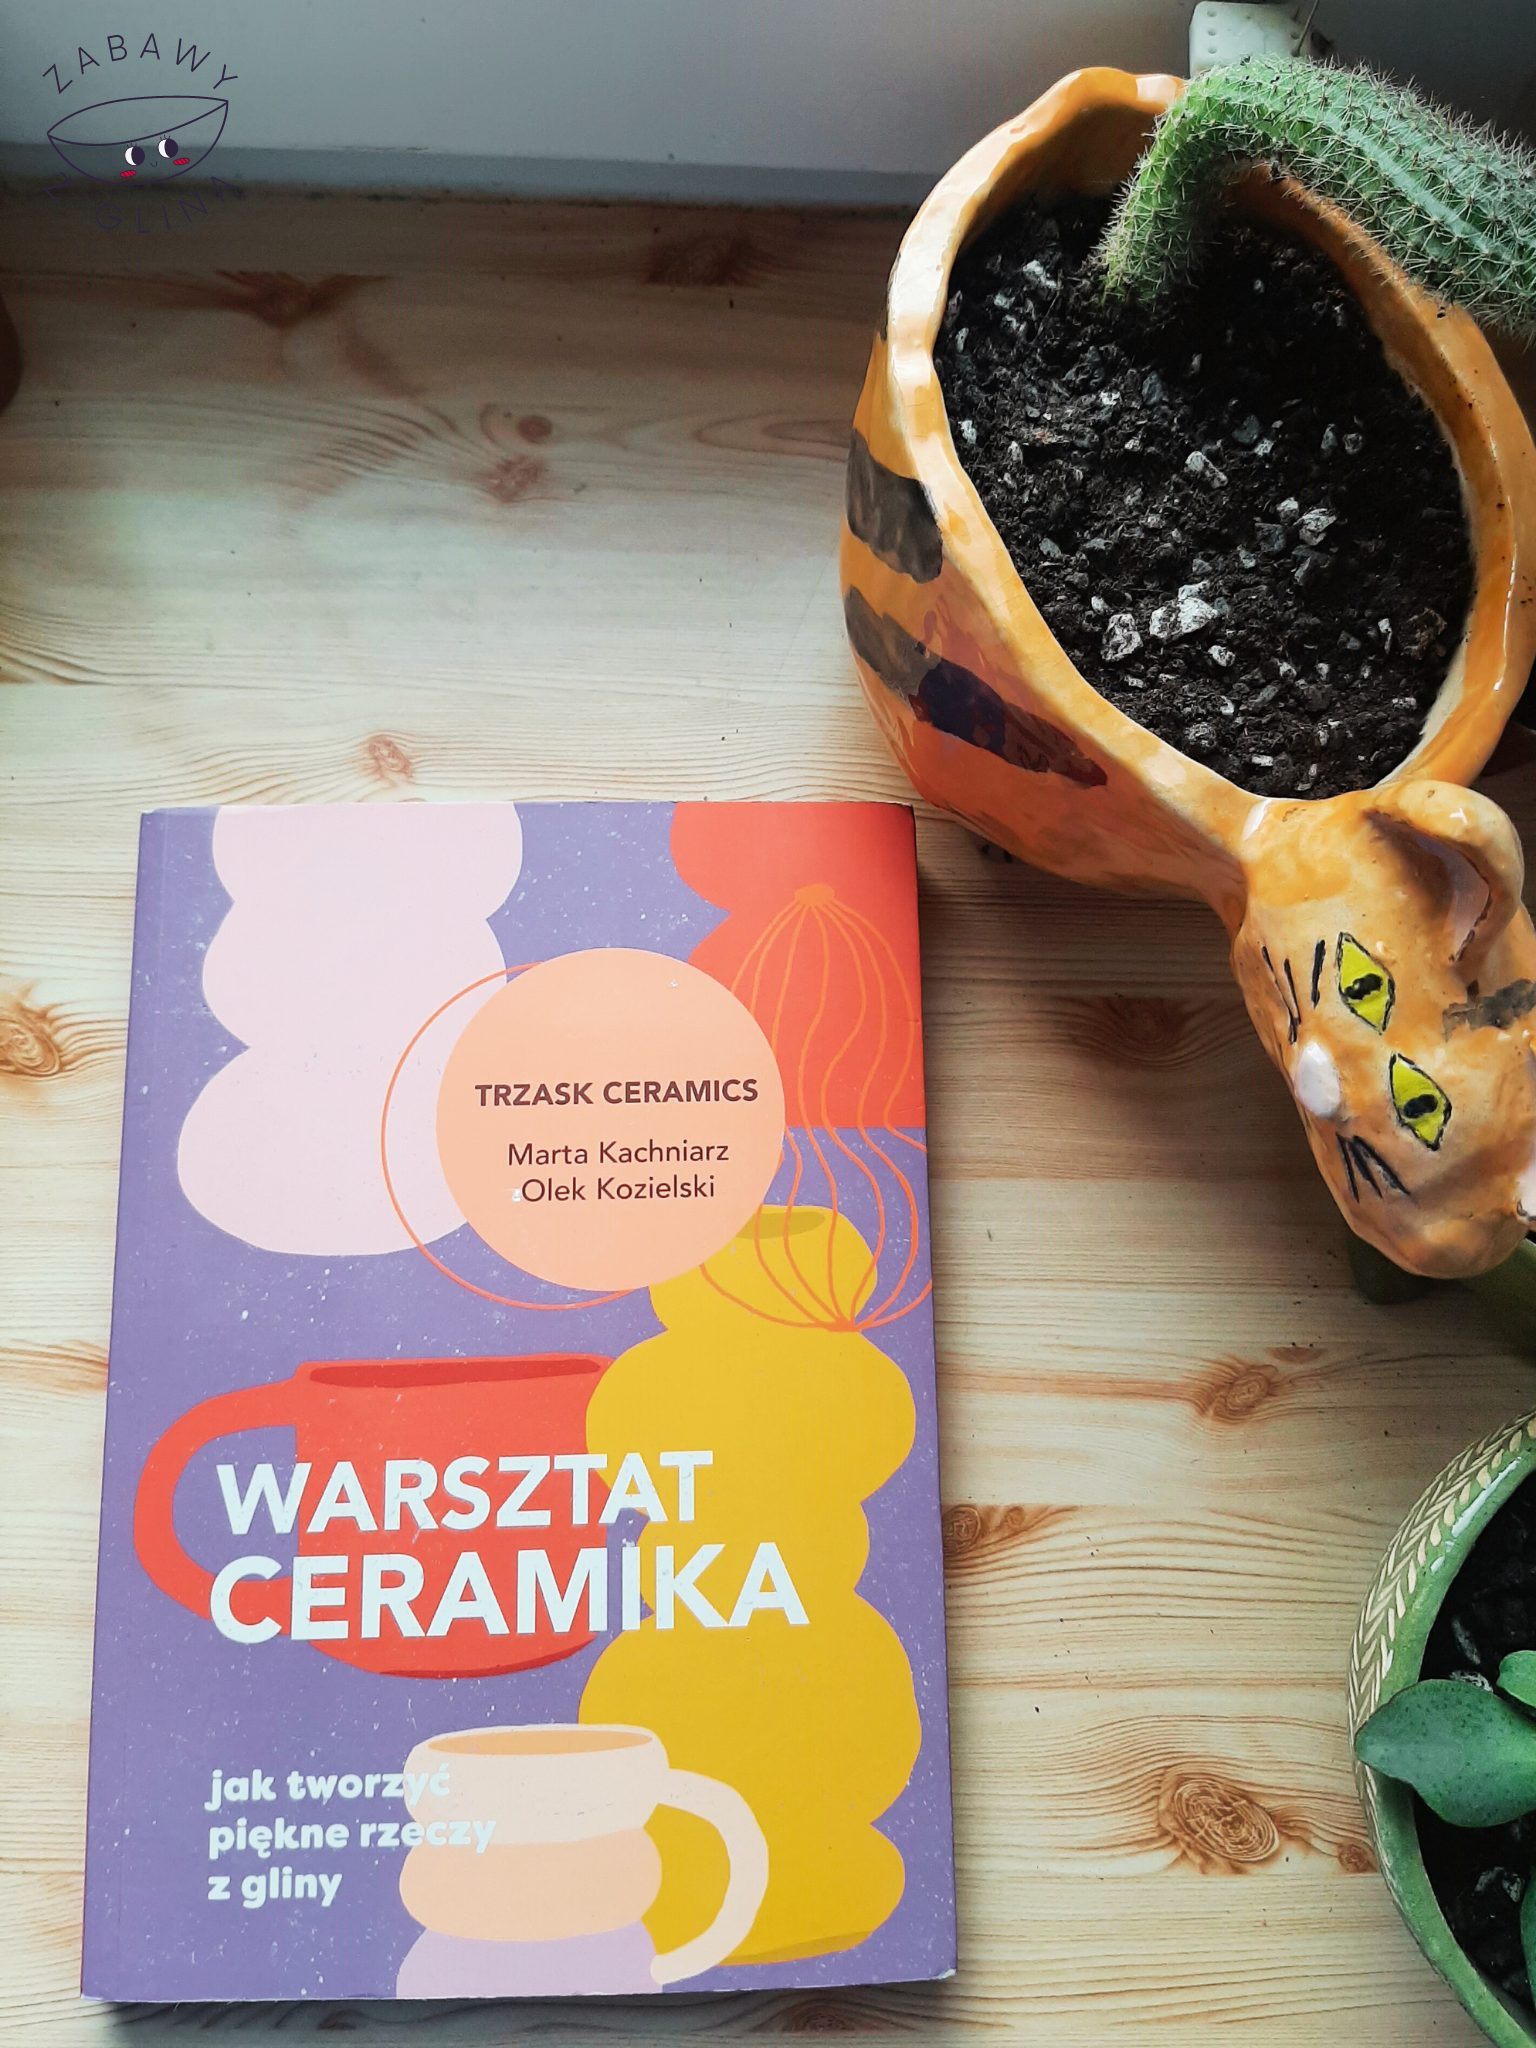 Książka "Warsztat ceramika" leżąca przy kwiatach w ceramicznych doniczkach.